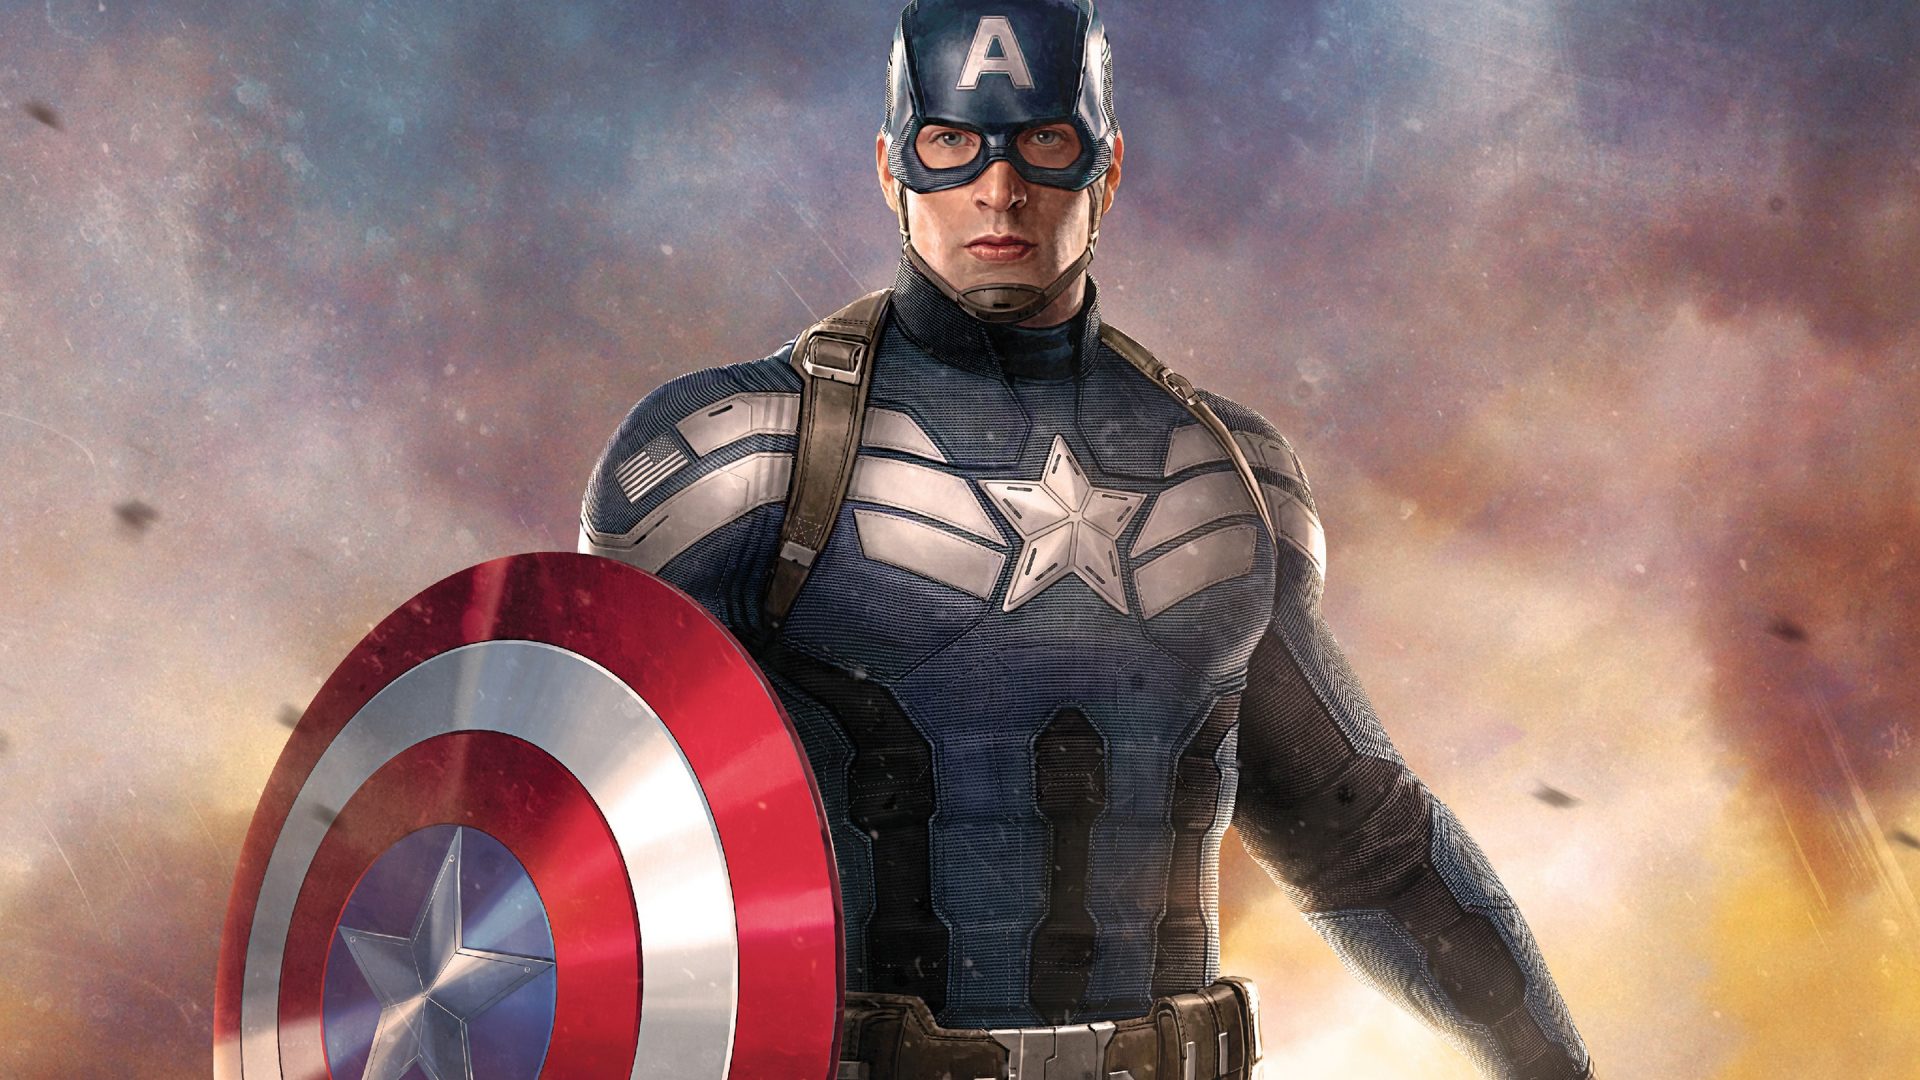 capitan america fondo de pantalla hd para móvil,superhéroe,personaje de ficción,capitan america,película,héroe